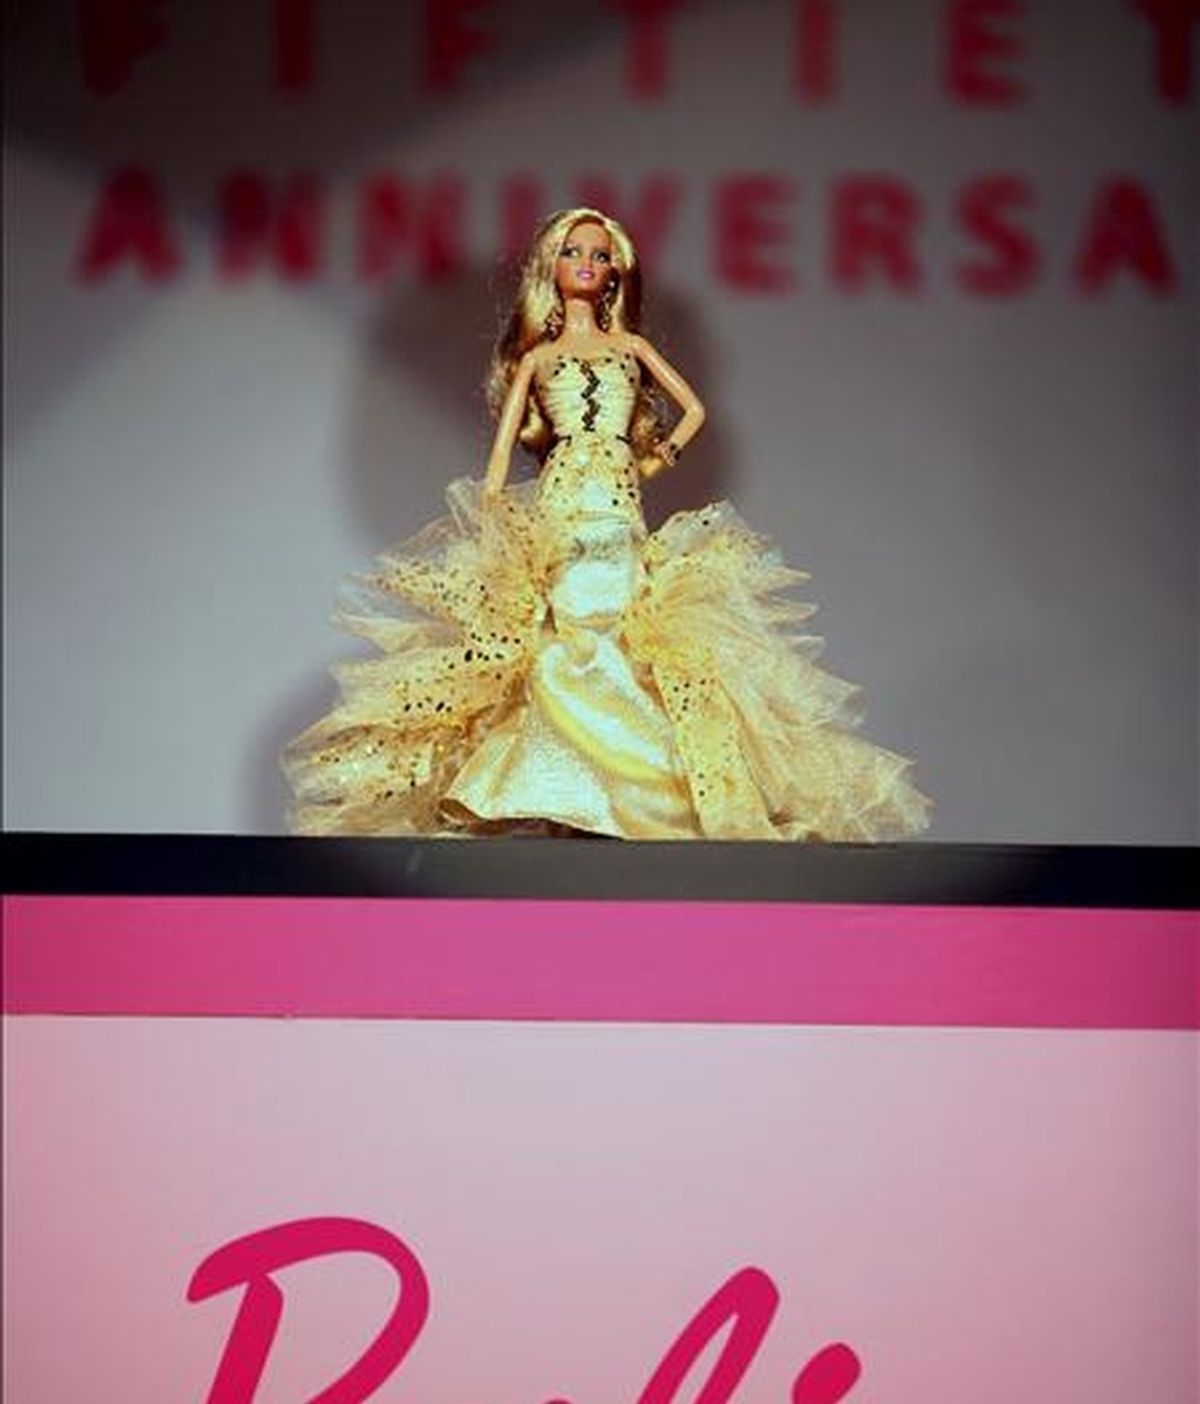 La empresa estadounidense Mattel, fabricante de la muñeca "Barbie" y otros juguetes, cerró el primer trimestre de este año con una perdida neta de 51 millones de dólares. EFE/Archivo